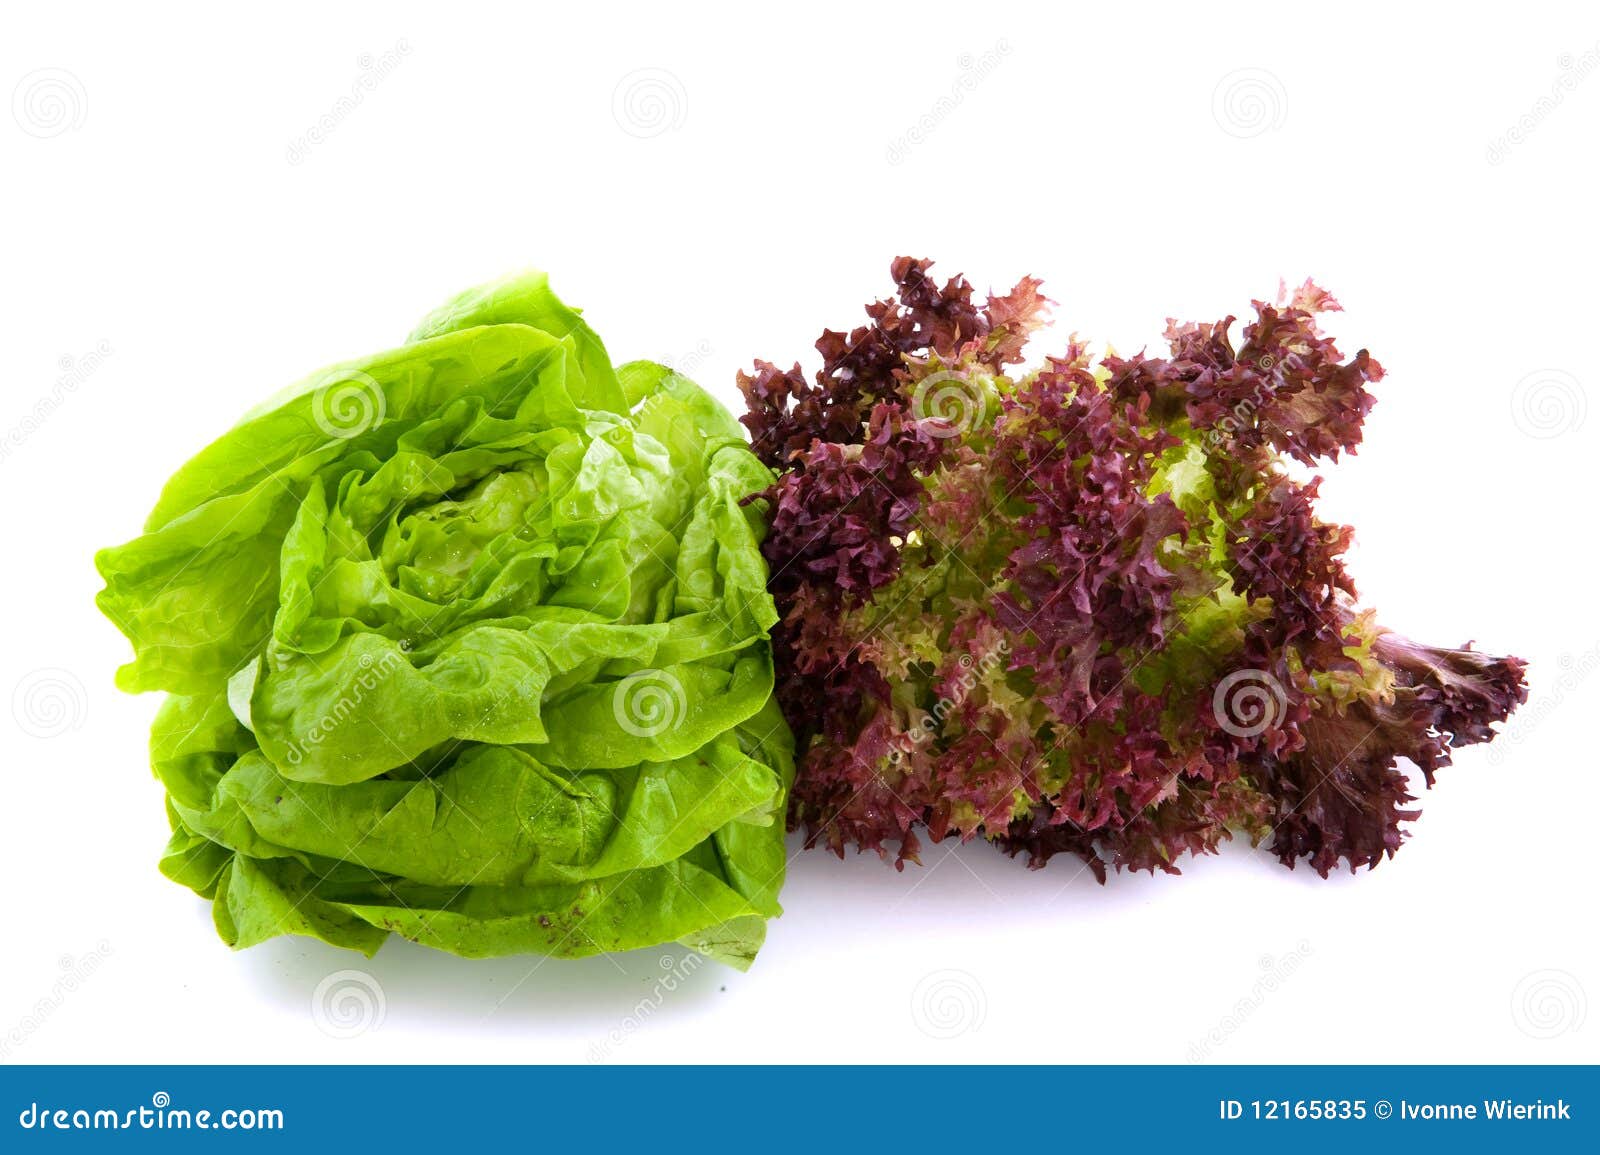 lollo rosso and butterhead salad